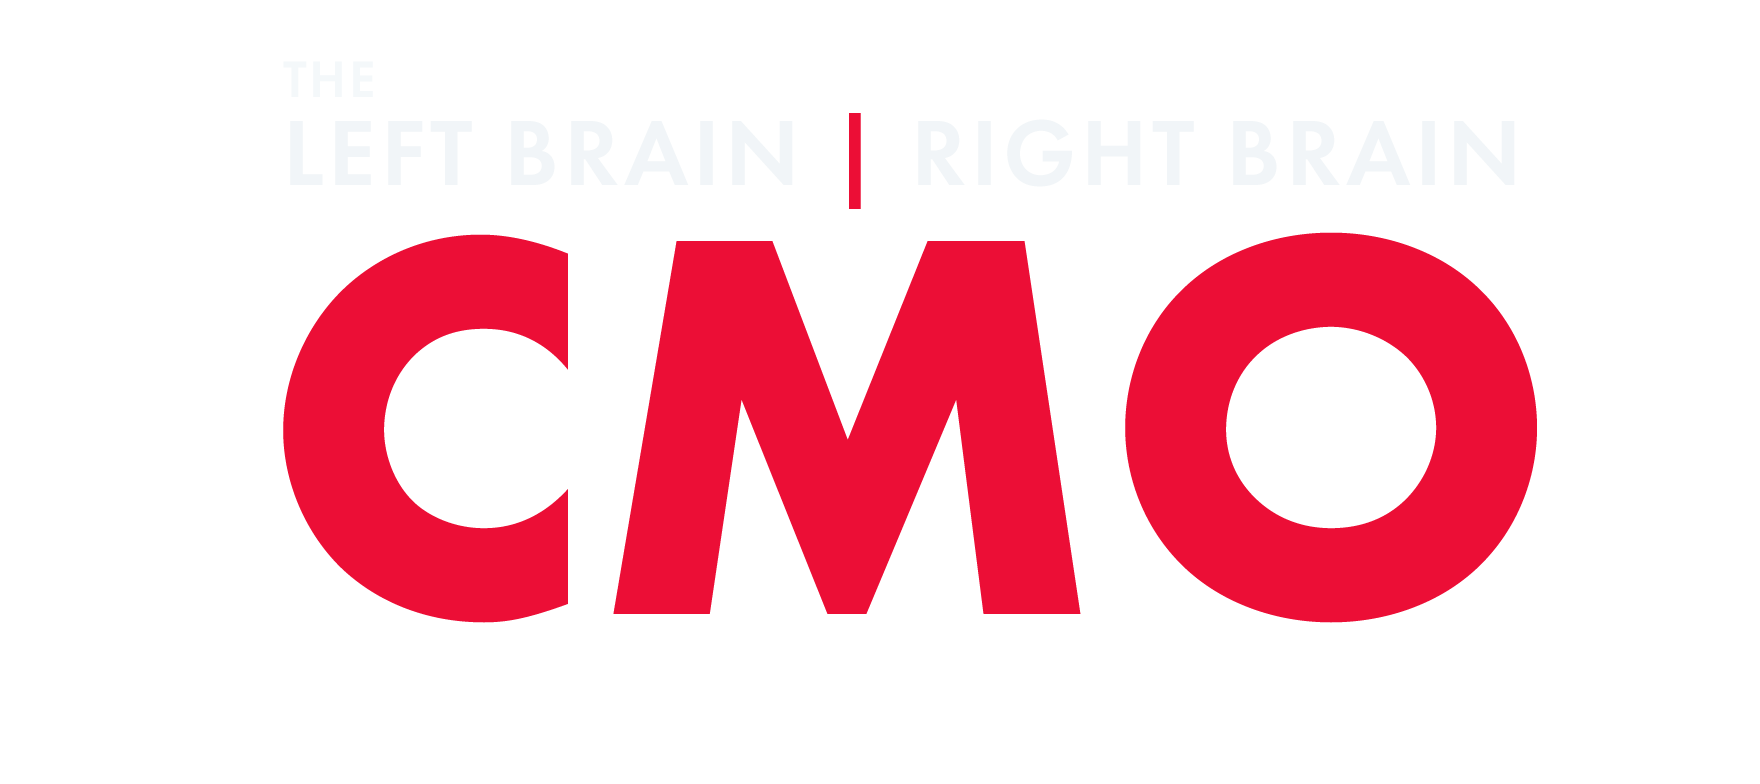 The Left Brain, Right Brain CMO